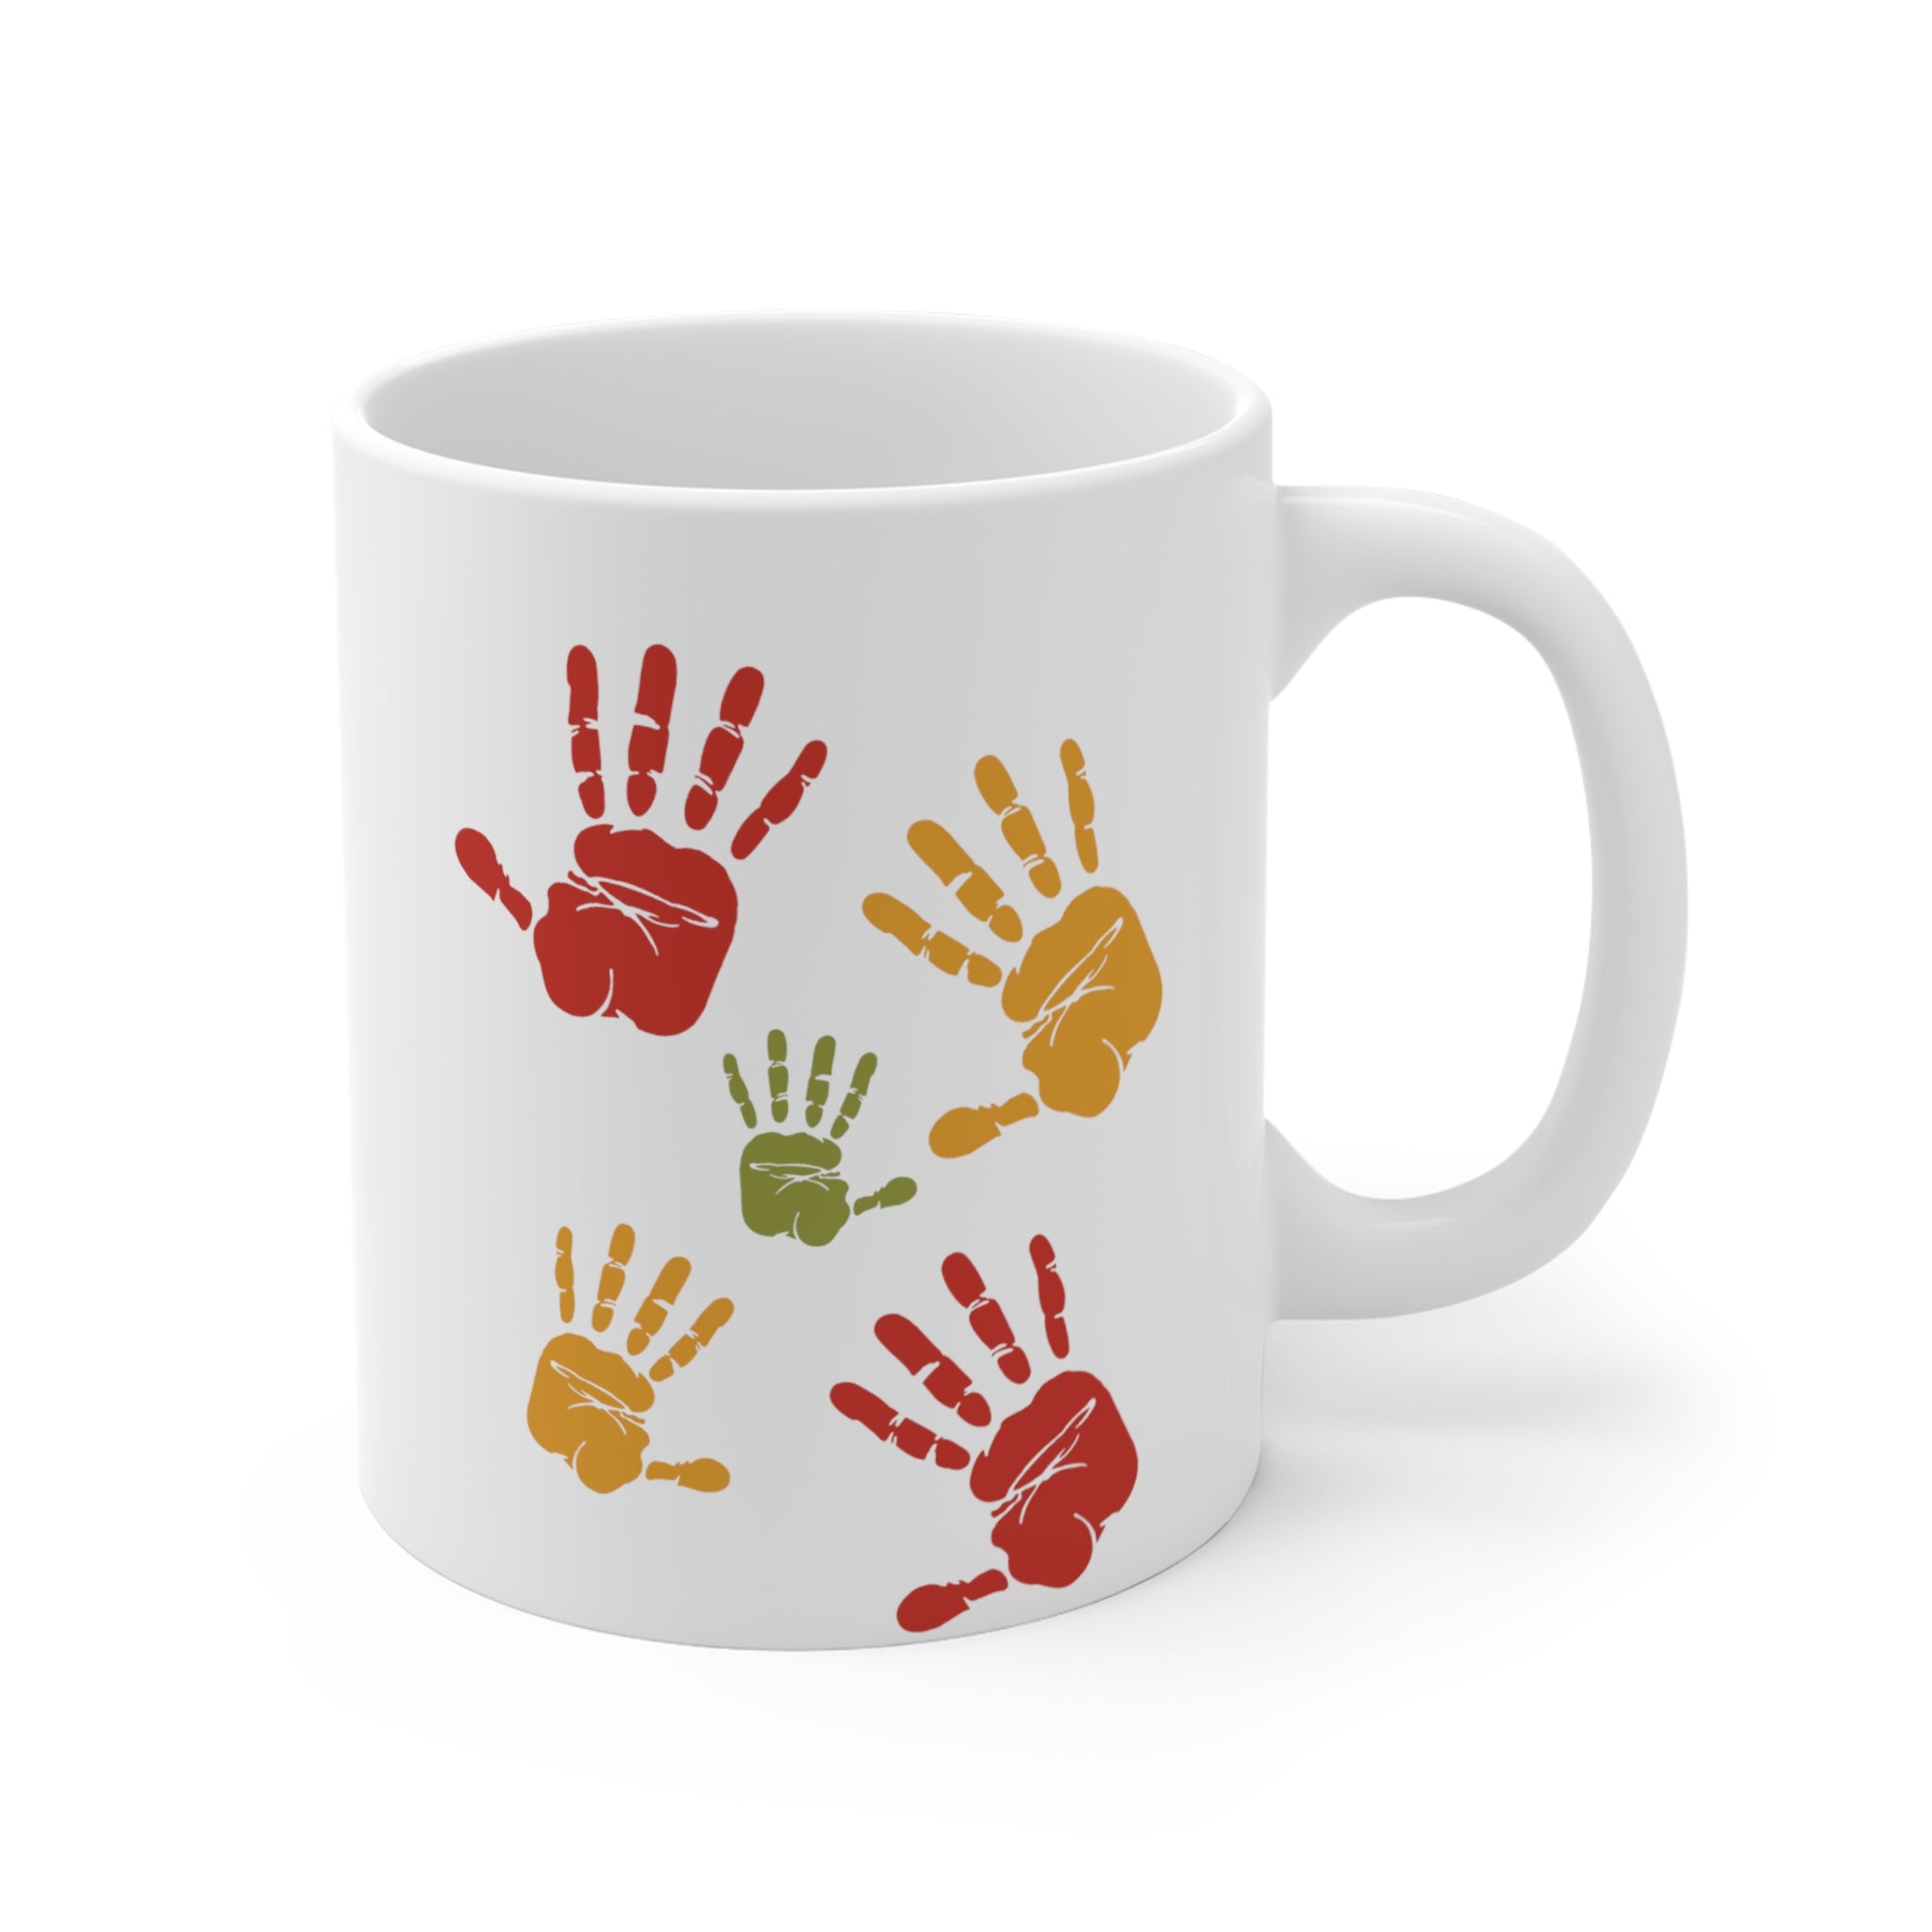 Thank You | Printed Coffee Mug for Gifting | 11 Oz